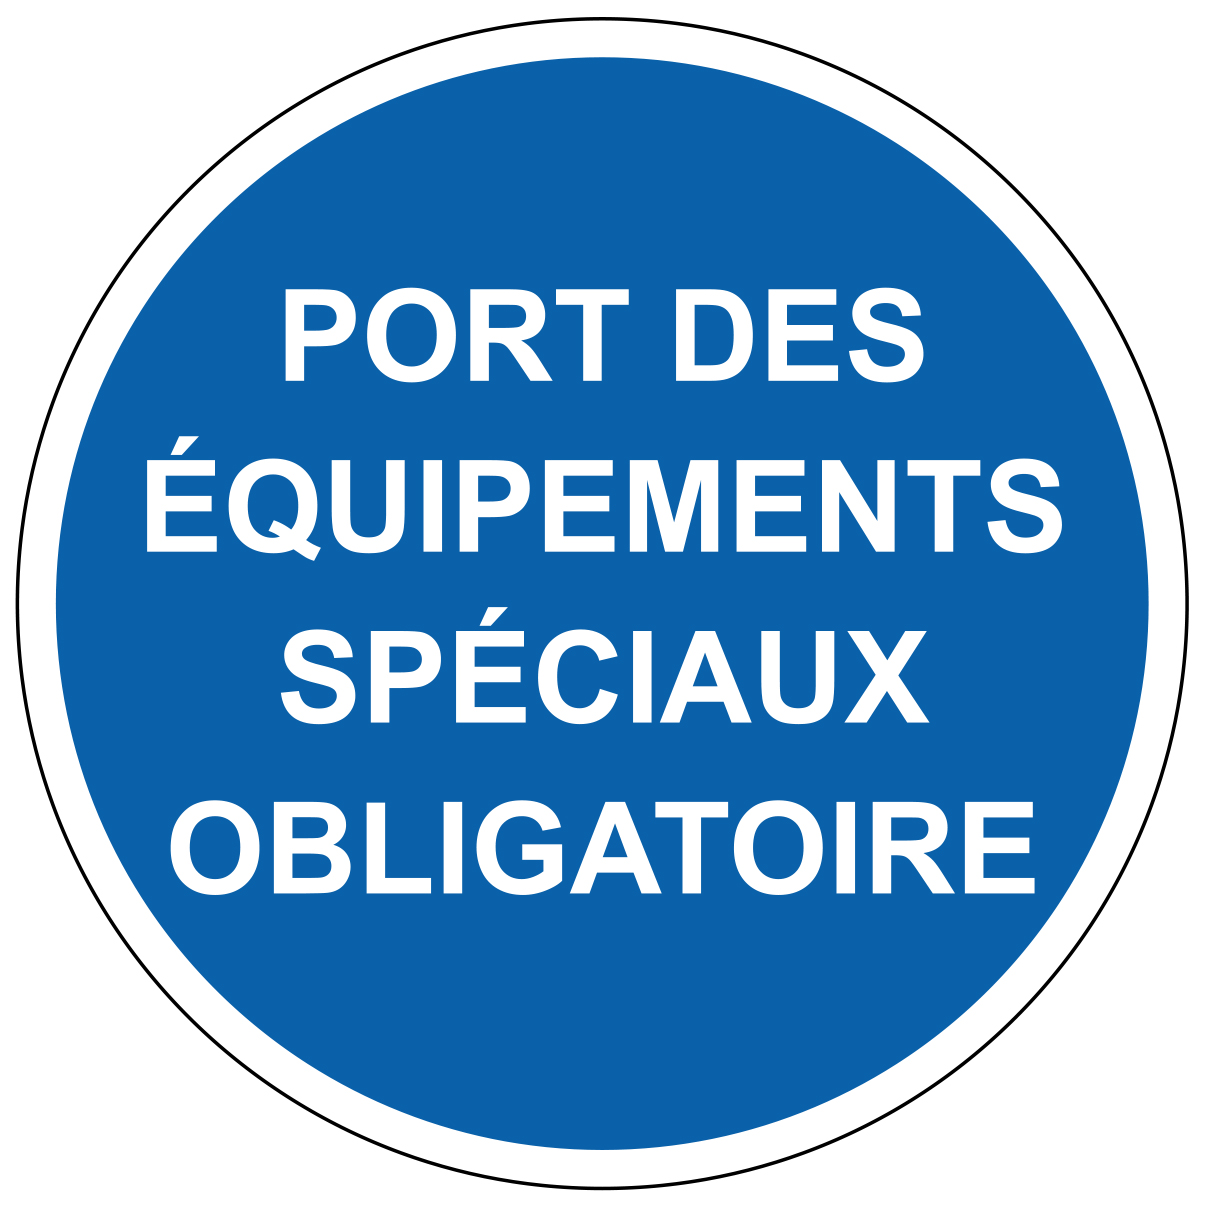 Port d'équipements spéciaux obligatoire - M308 - étiquettes et panneaux d'obligation et de consigne